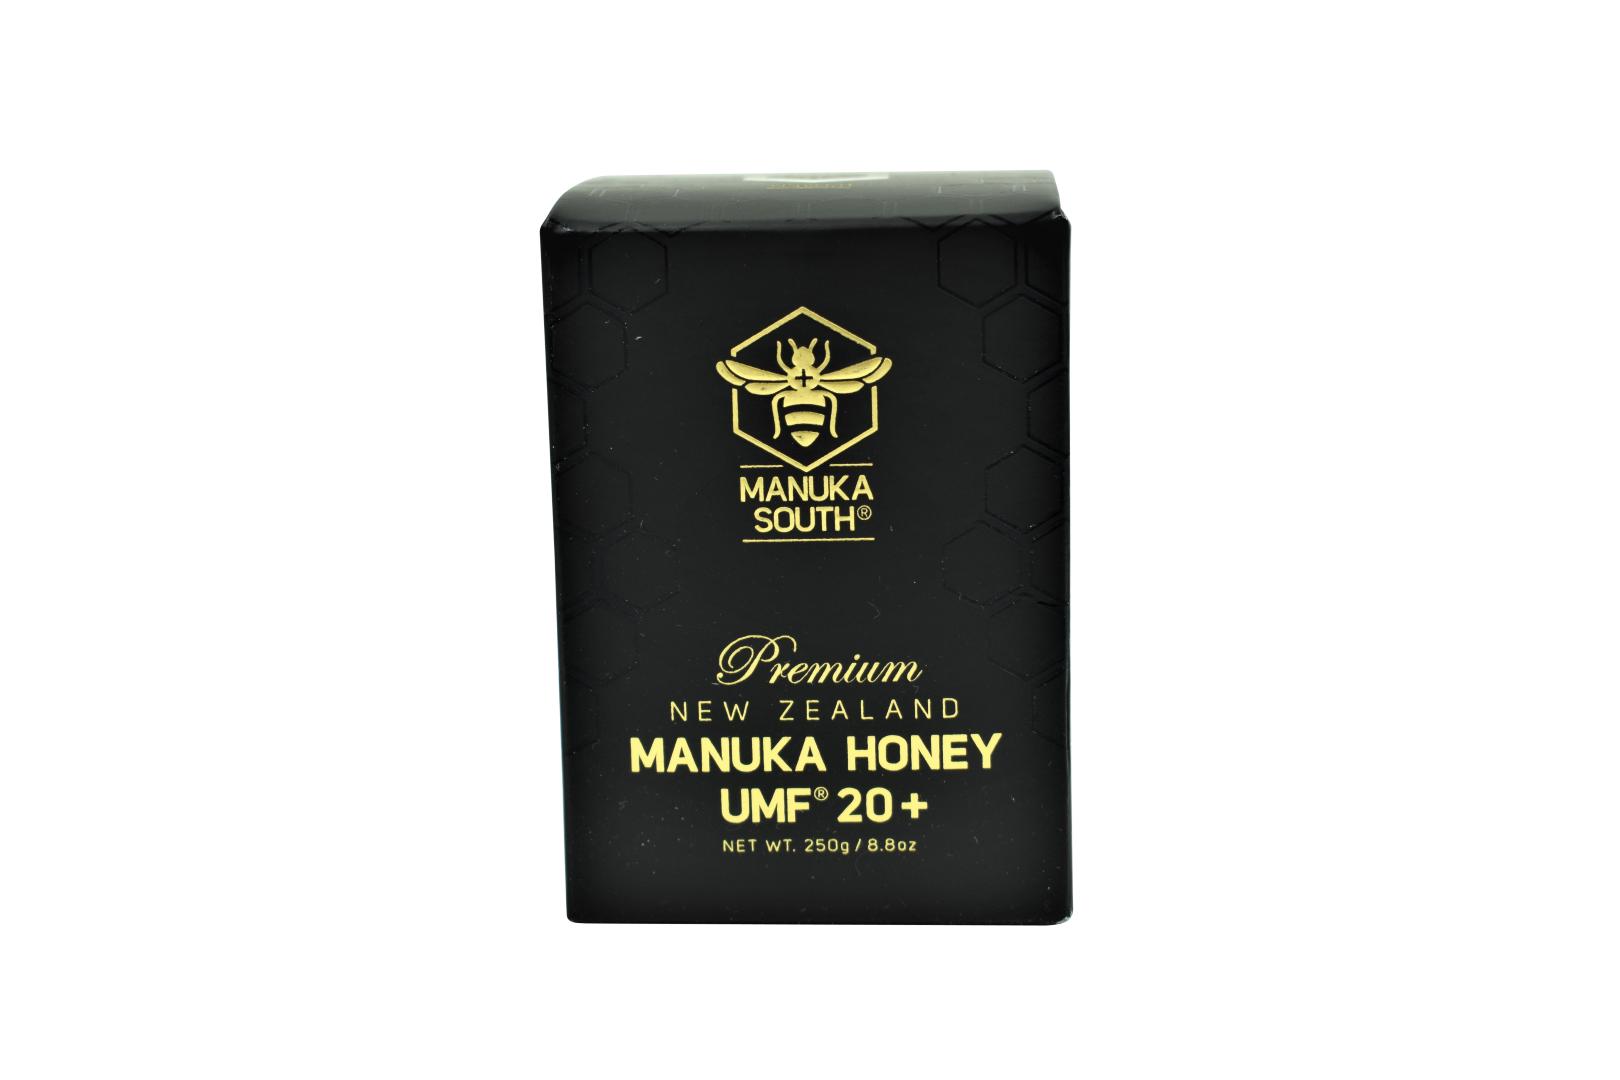 Manuka South Manuka Honey UMF 20+